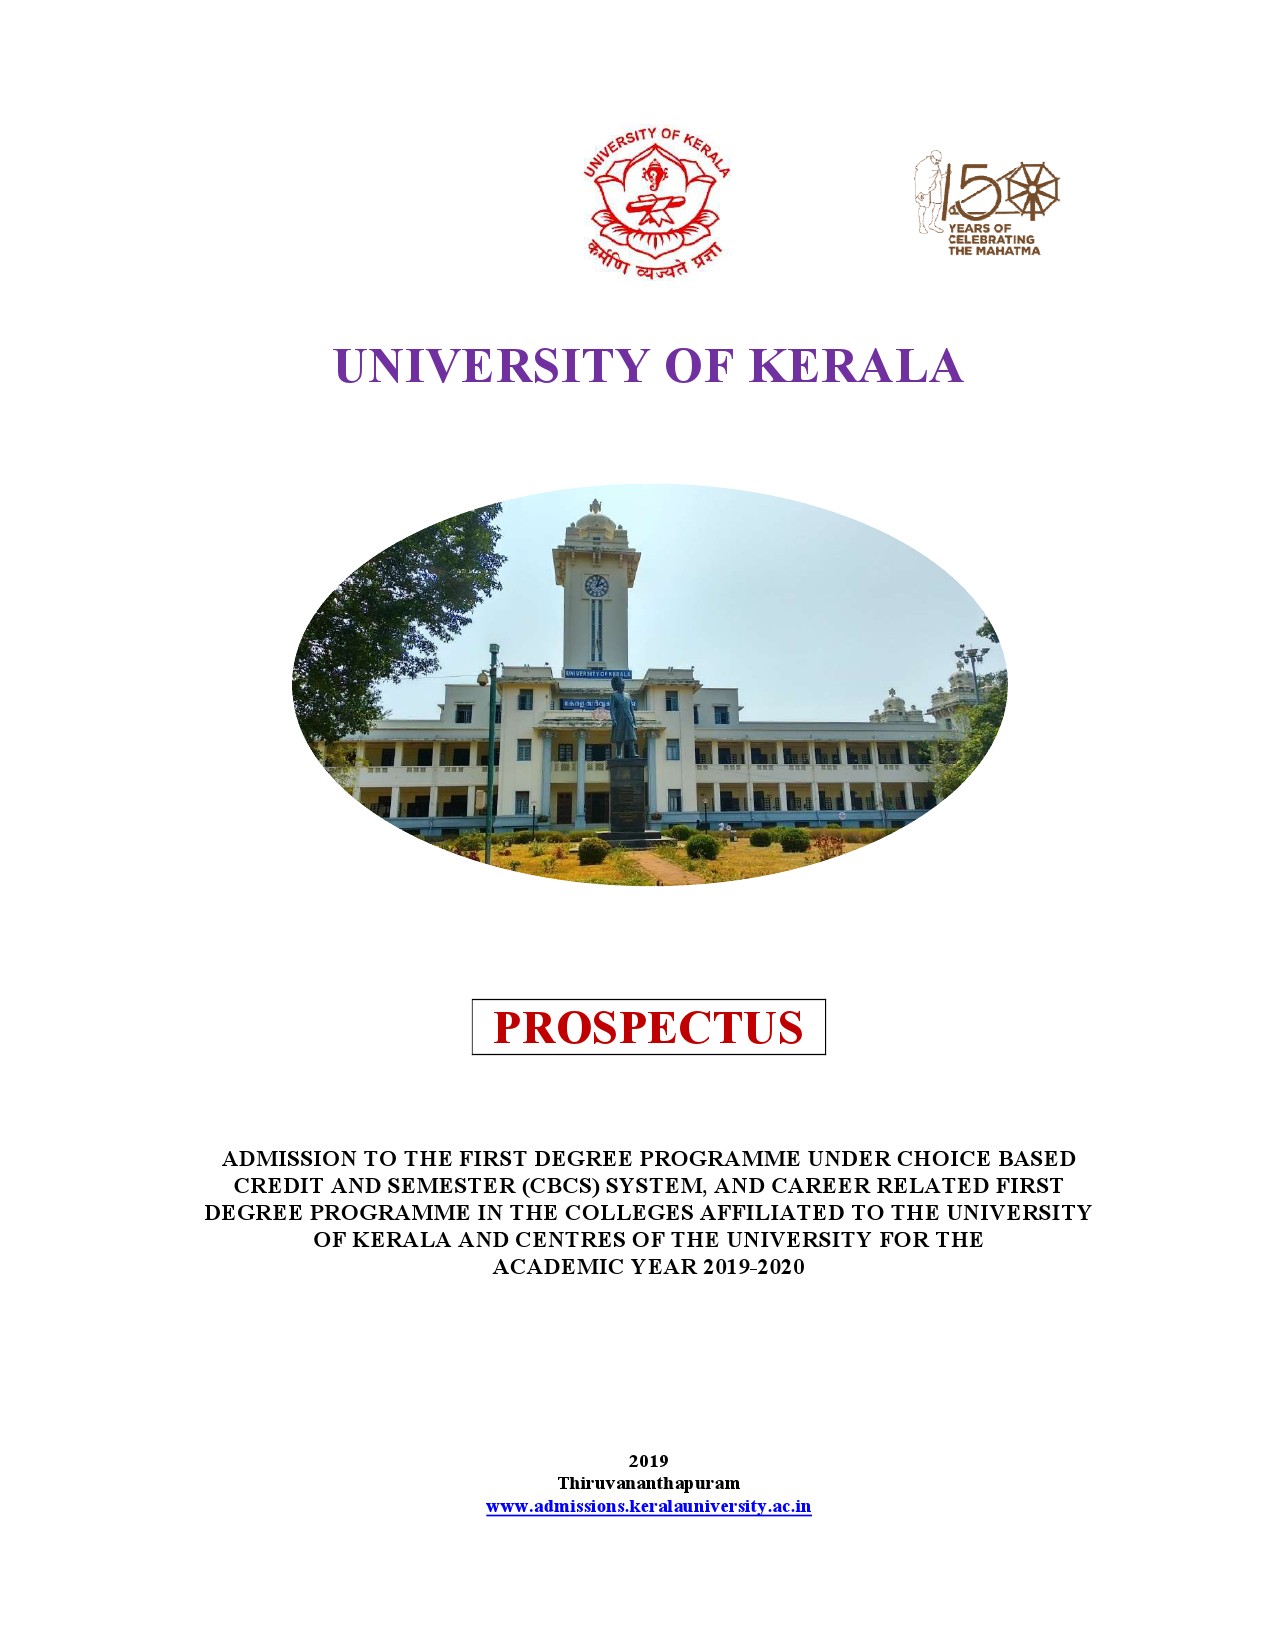 Kerala University UG Admission Prospectus 2019 - Notification Image 1